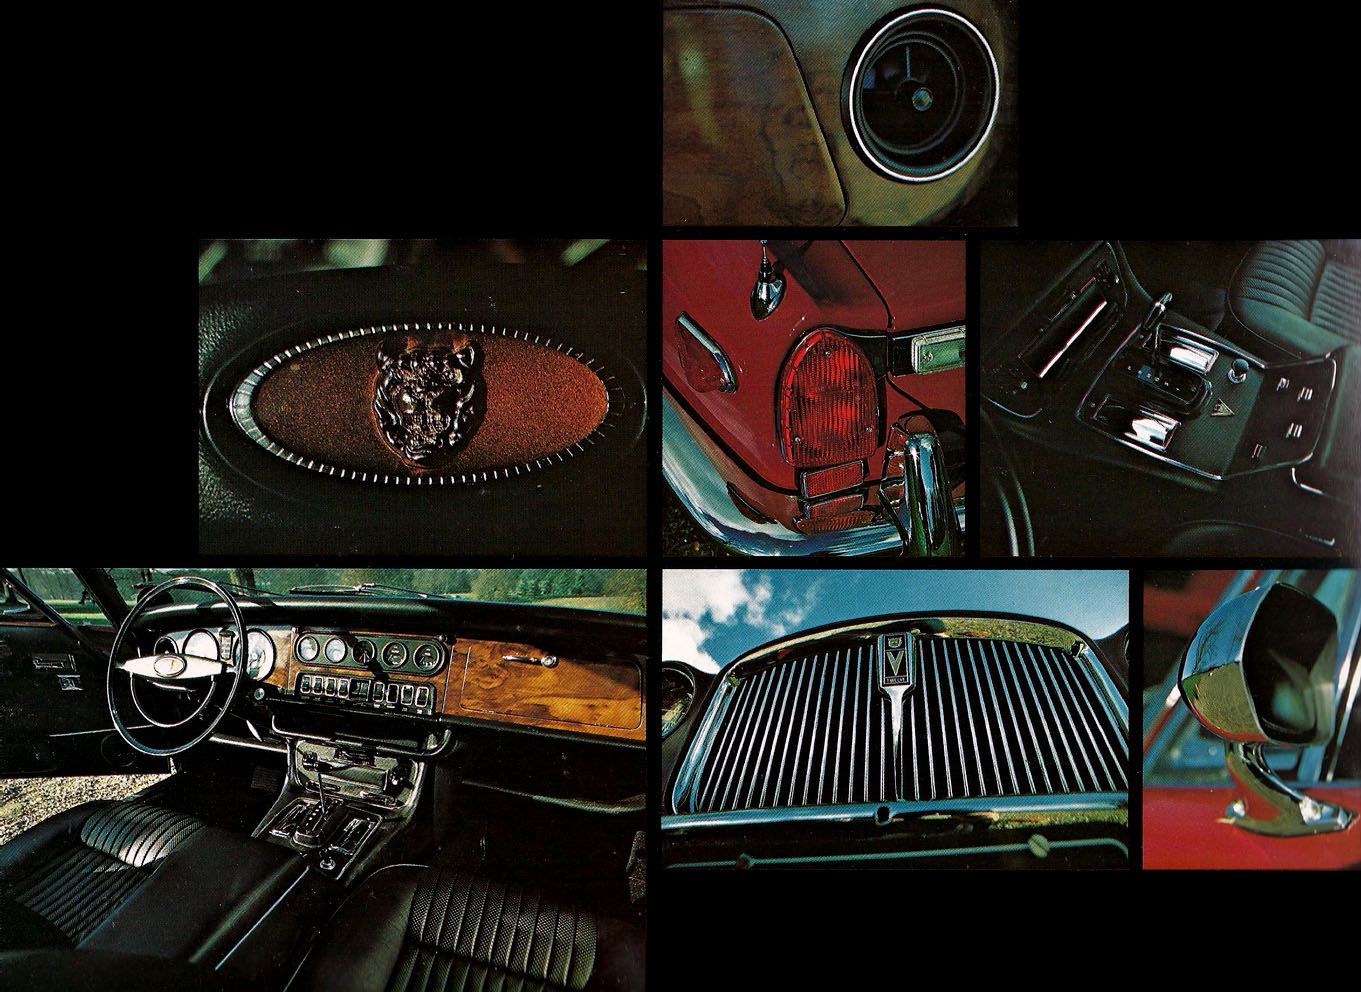 estratto brochure con i particolari della Jaguar XJ12, interni ed esterni